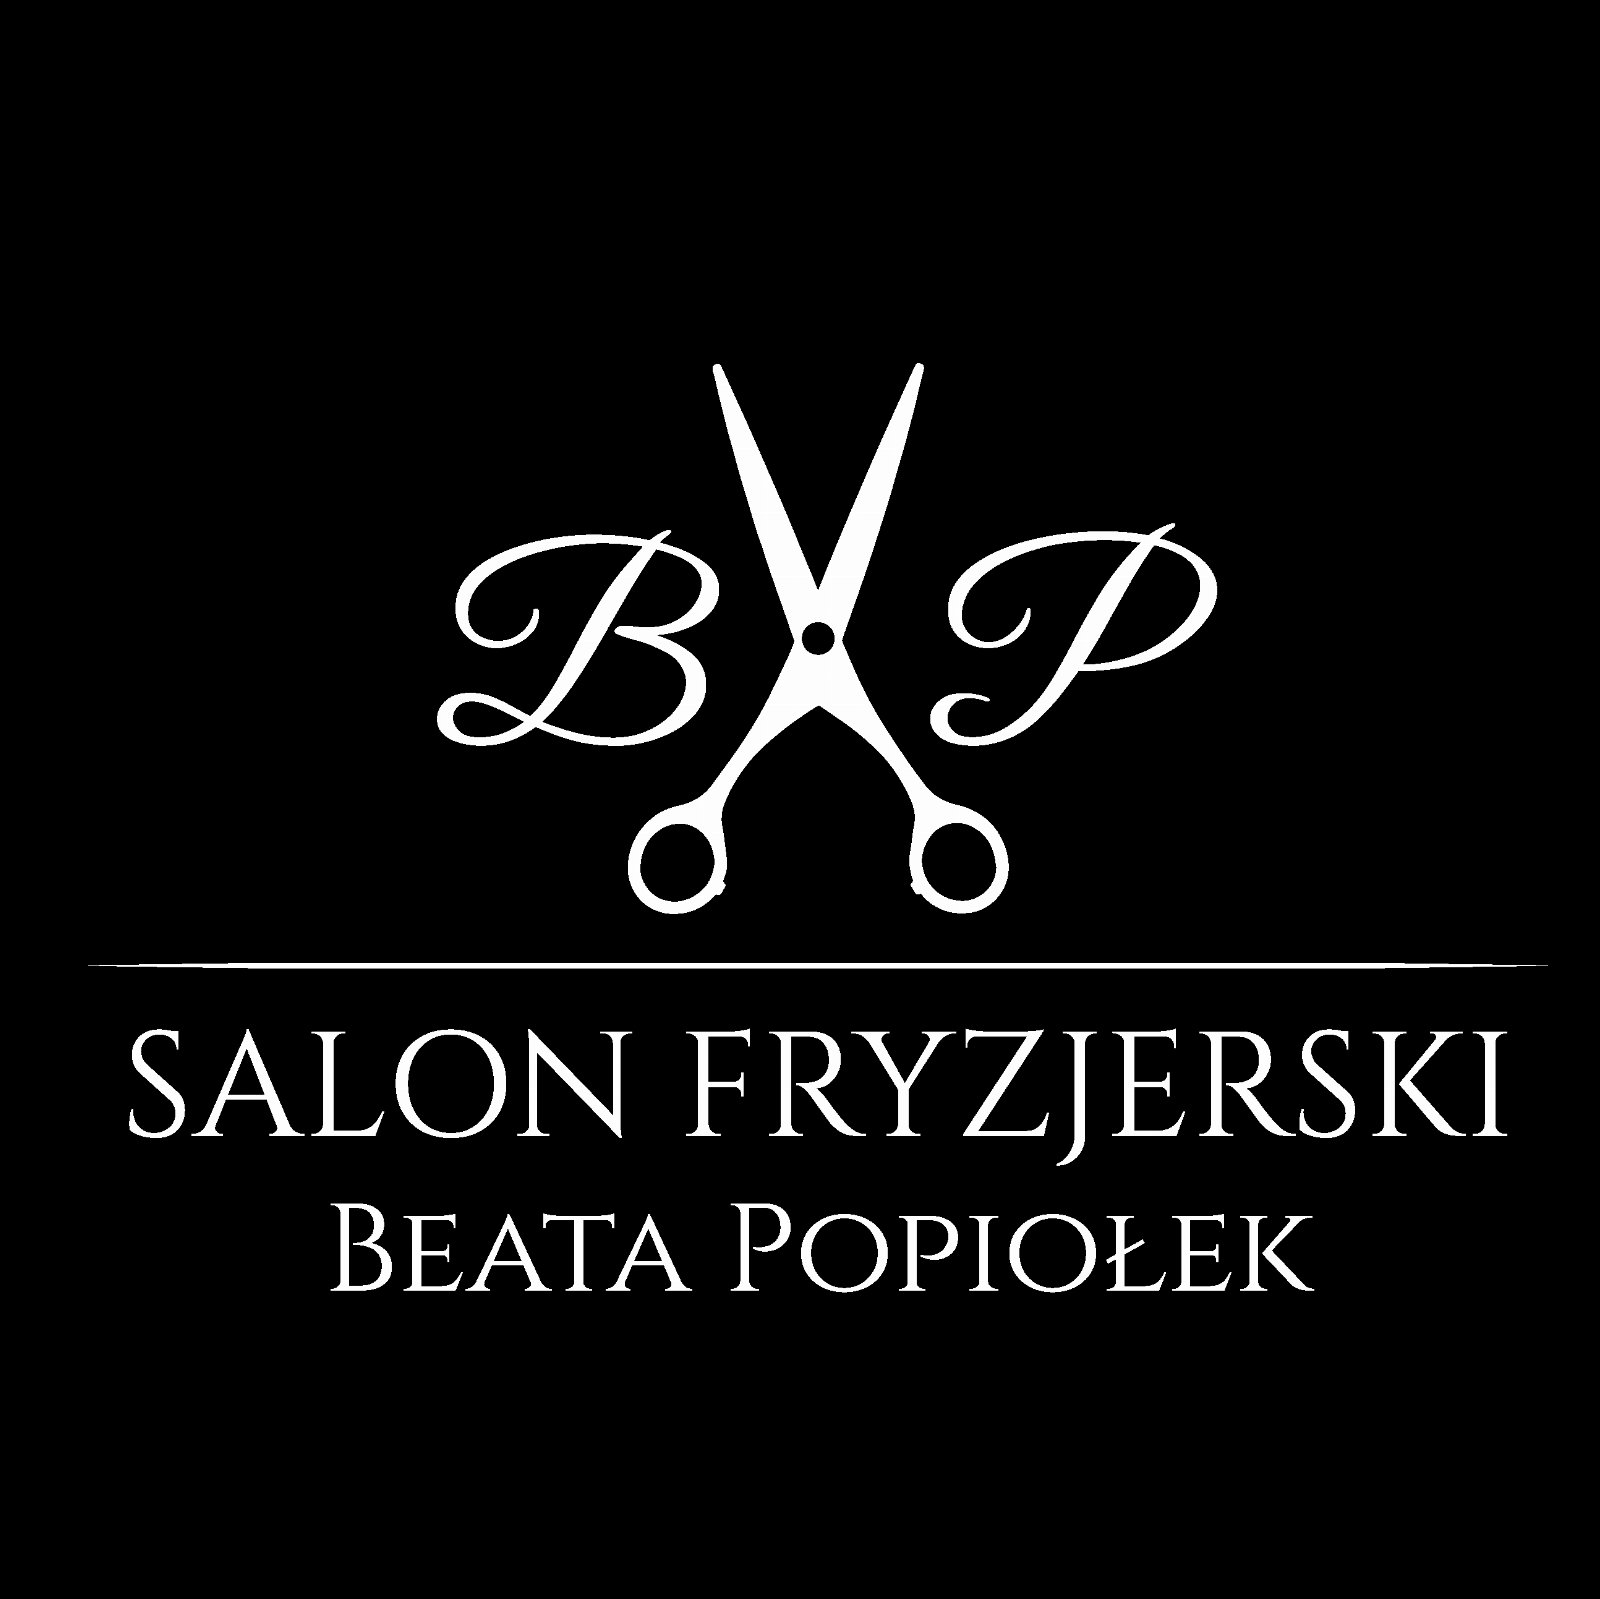 Salon Fryzjerski Beata Popiołek